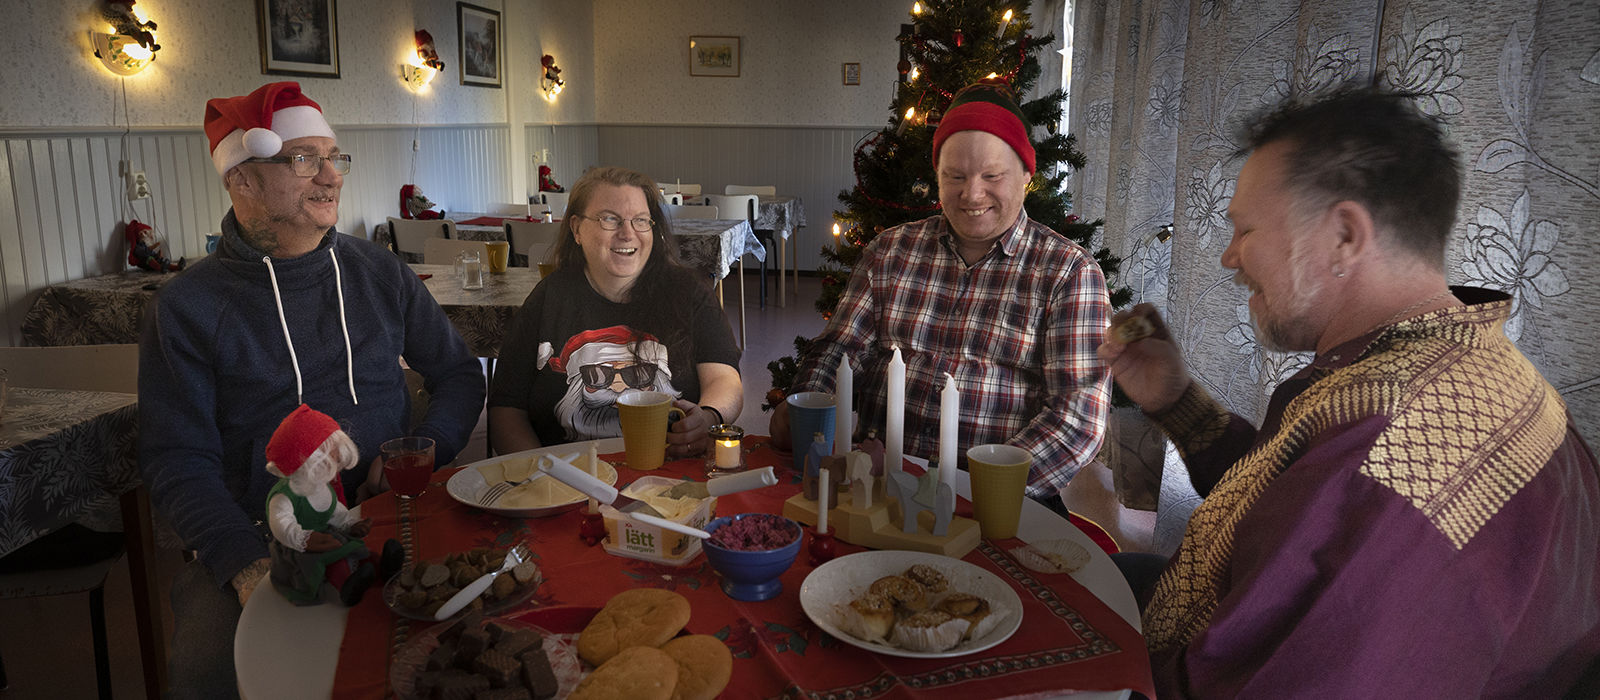 Till de ensamma. Lokala hyresgästföreningen i Delsbo, där Palle Lindberg är ordförande, bjuder in alla hyresgäster som annars skulle sitta ensamma på julafton.